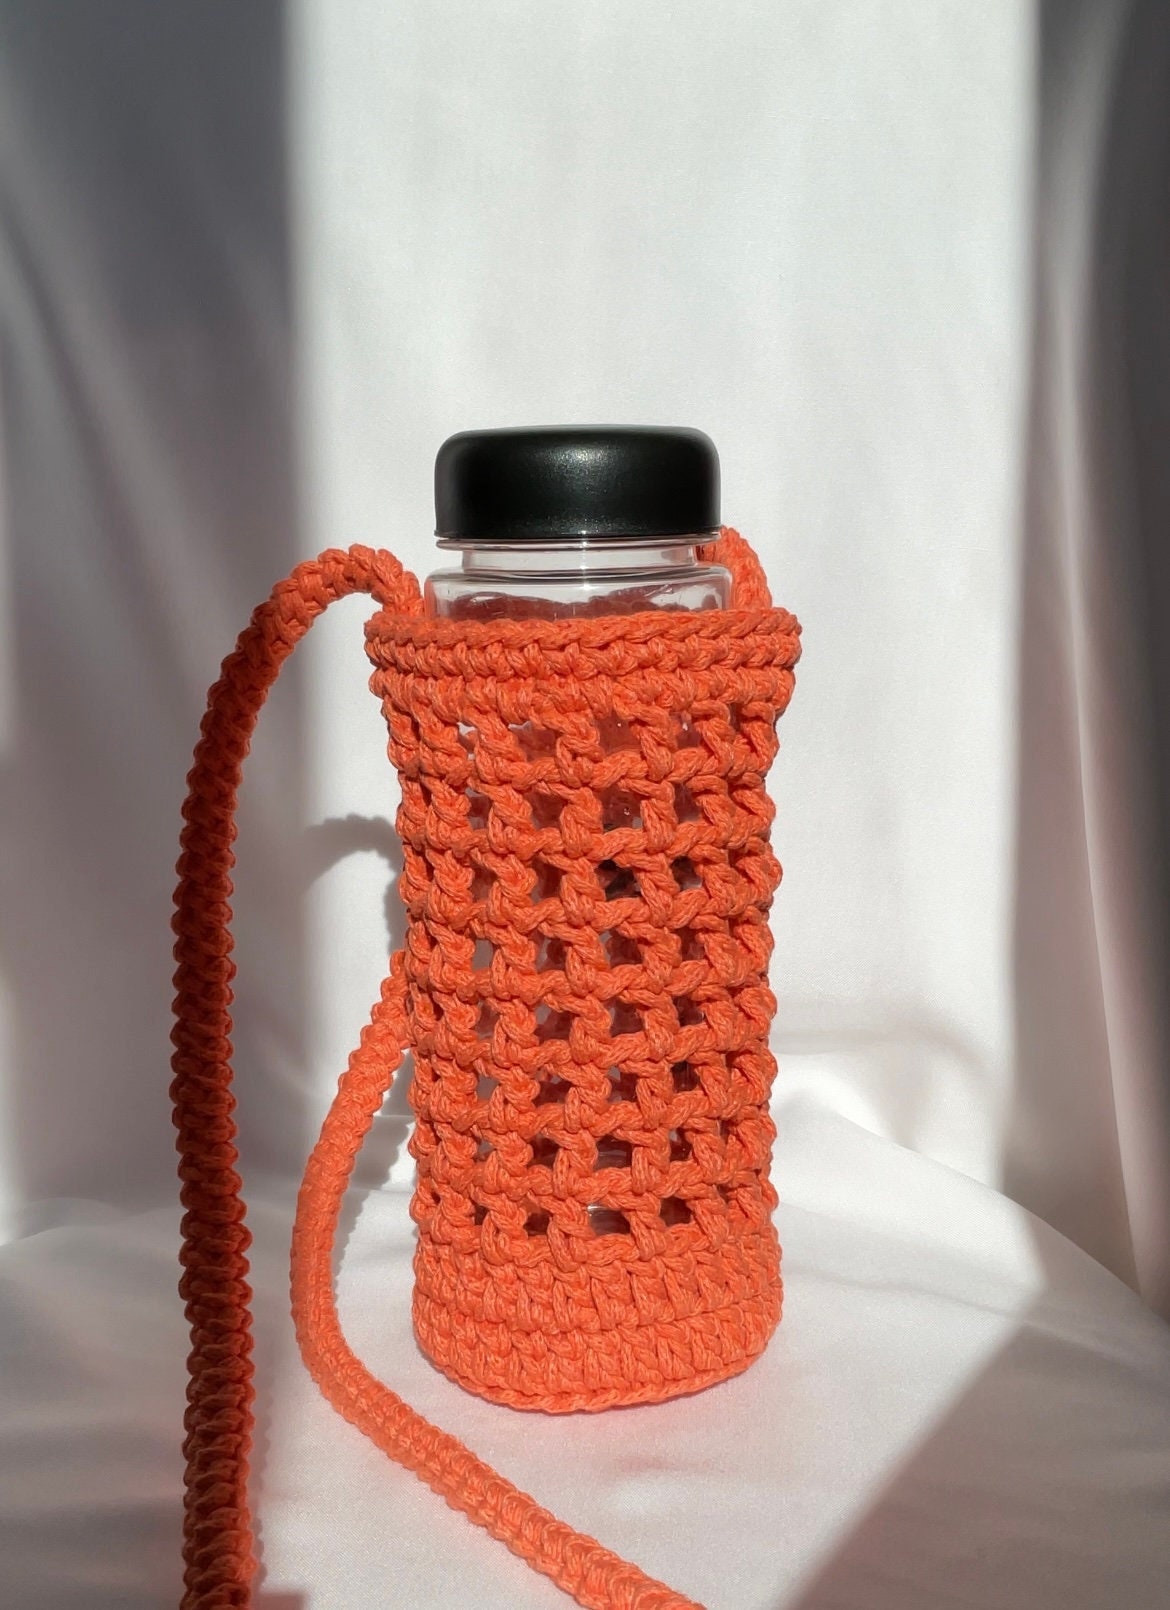 Strawberry Water Bottle Holder pattern by Jessica Garcia-Velez